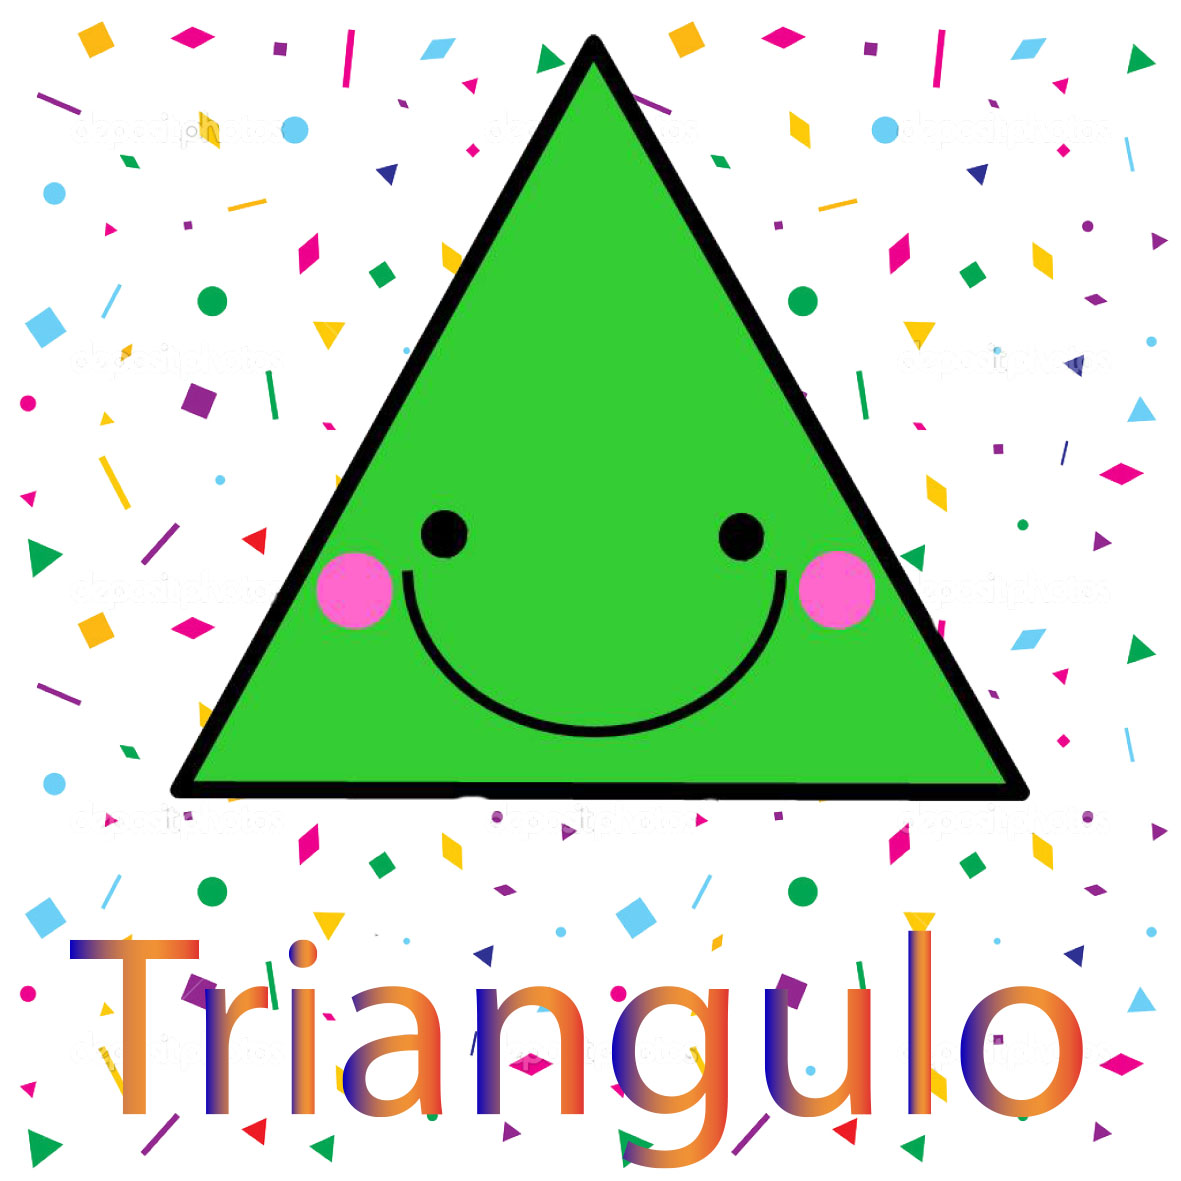 imagen de la figura geometrica llamada triangulo, se caracteriza por tener tres lados y tres angulos iguales 